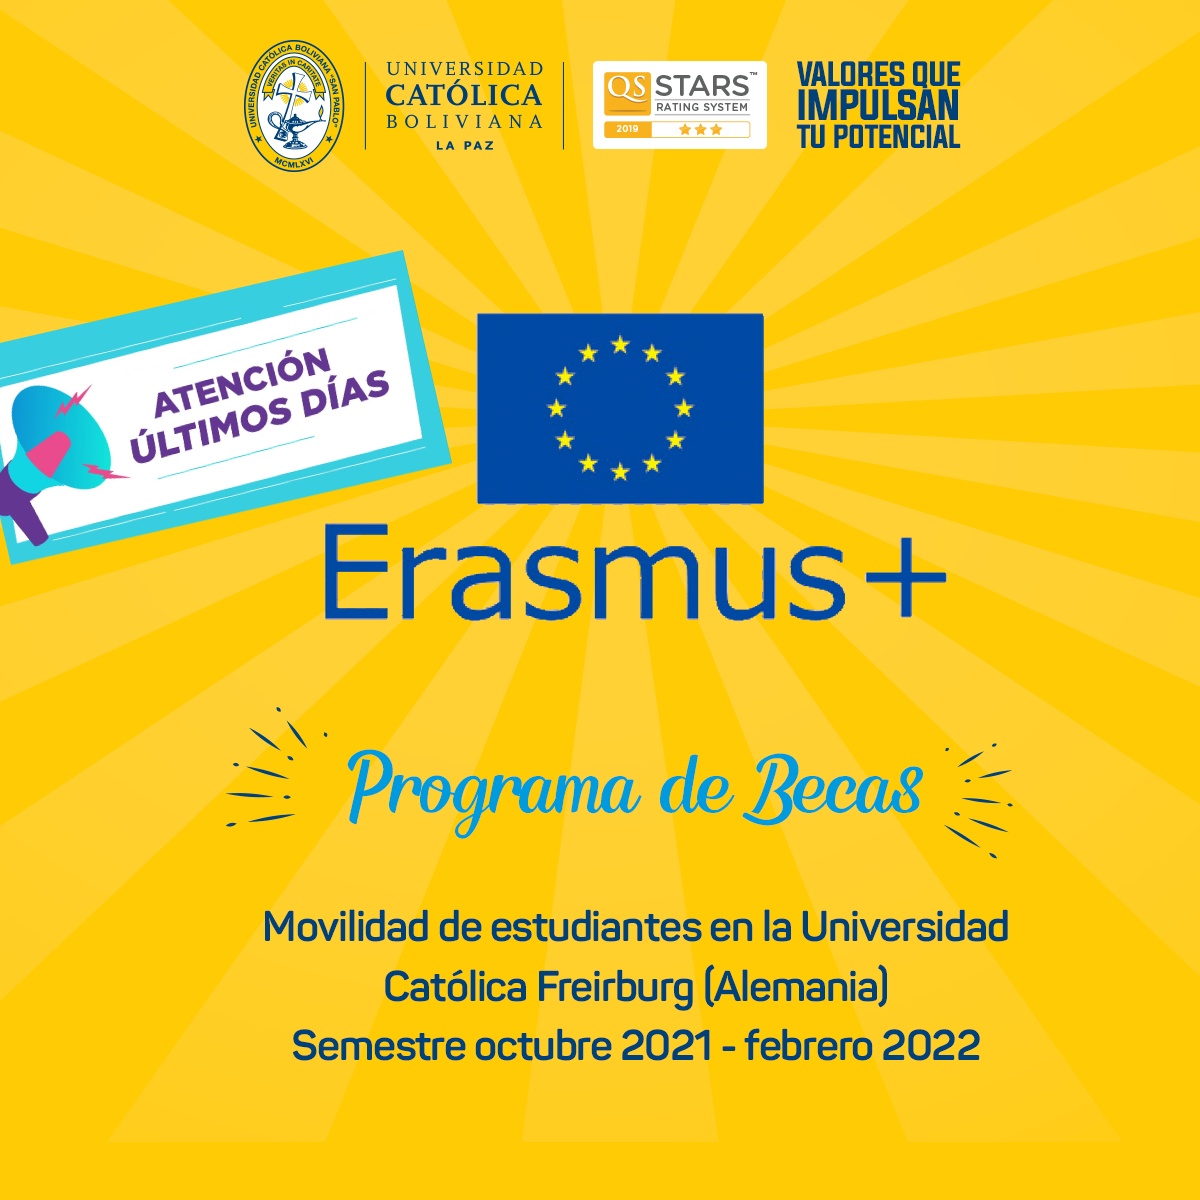 ÚLTIMOS DÍAS para postular al Programa de Becas ERASMUS+ en la Universidad Católica de Friburgo en Alemania.